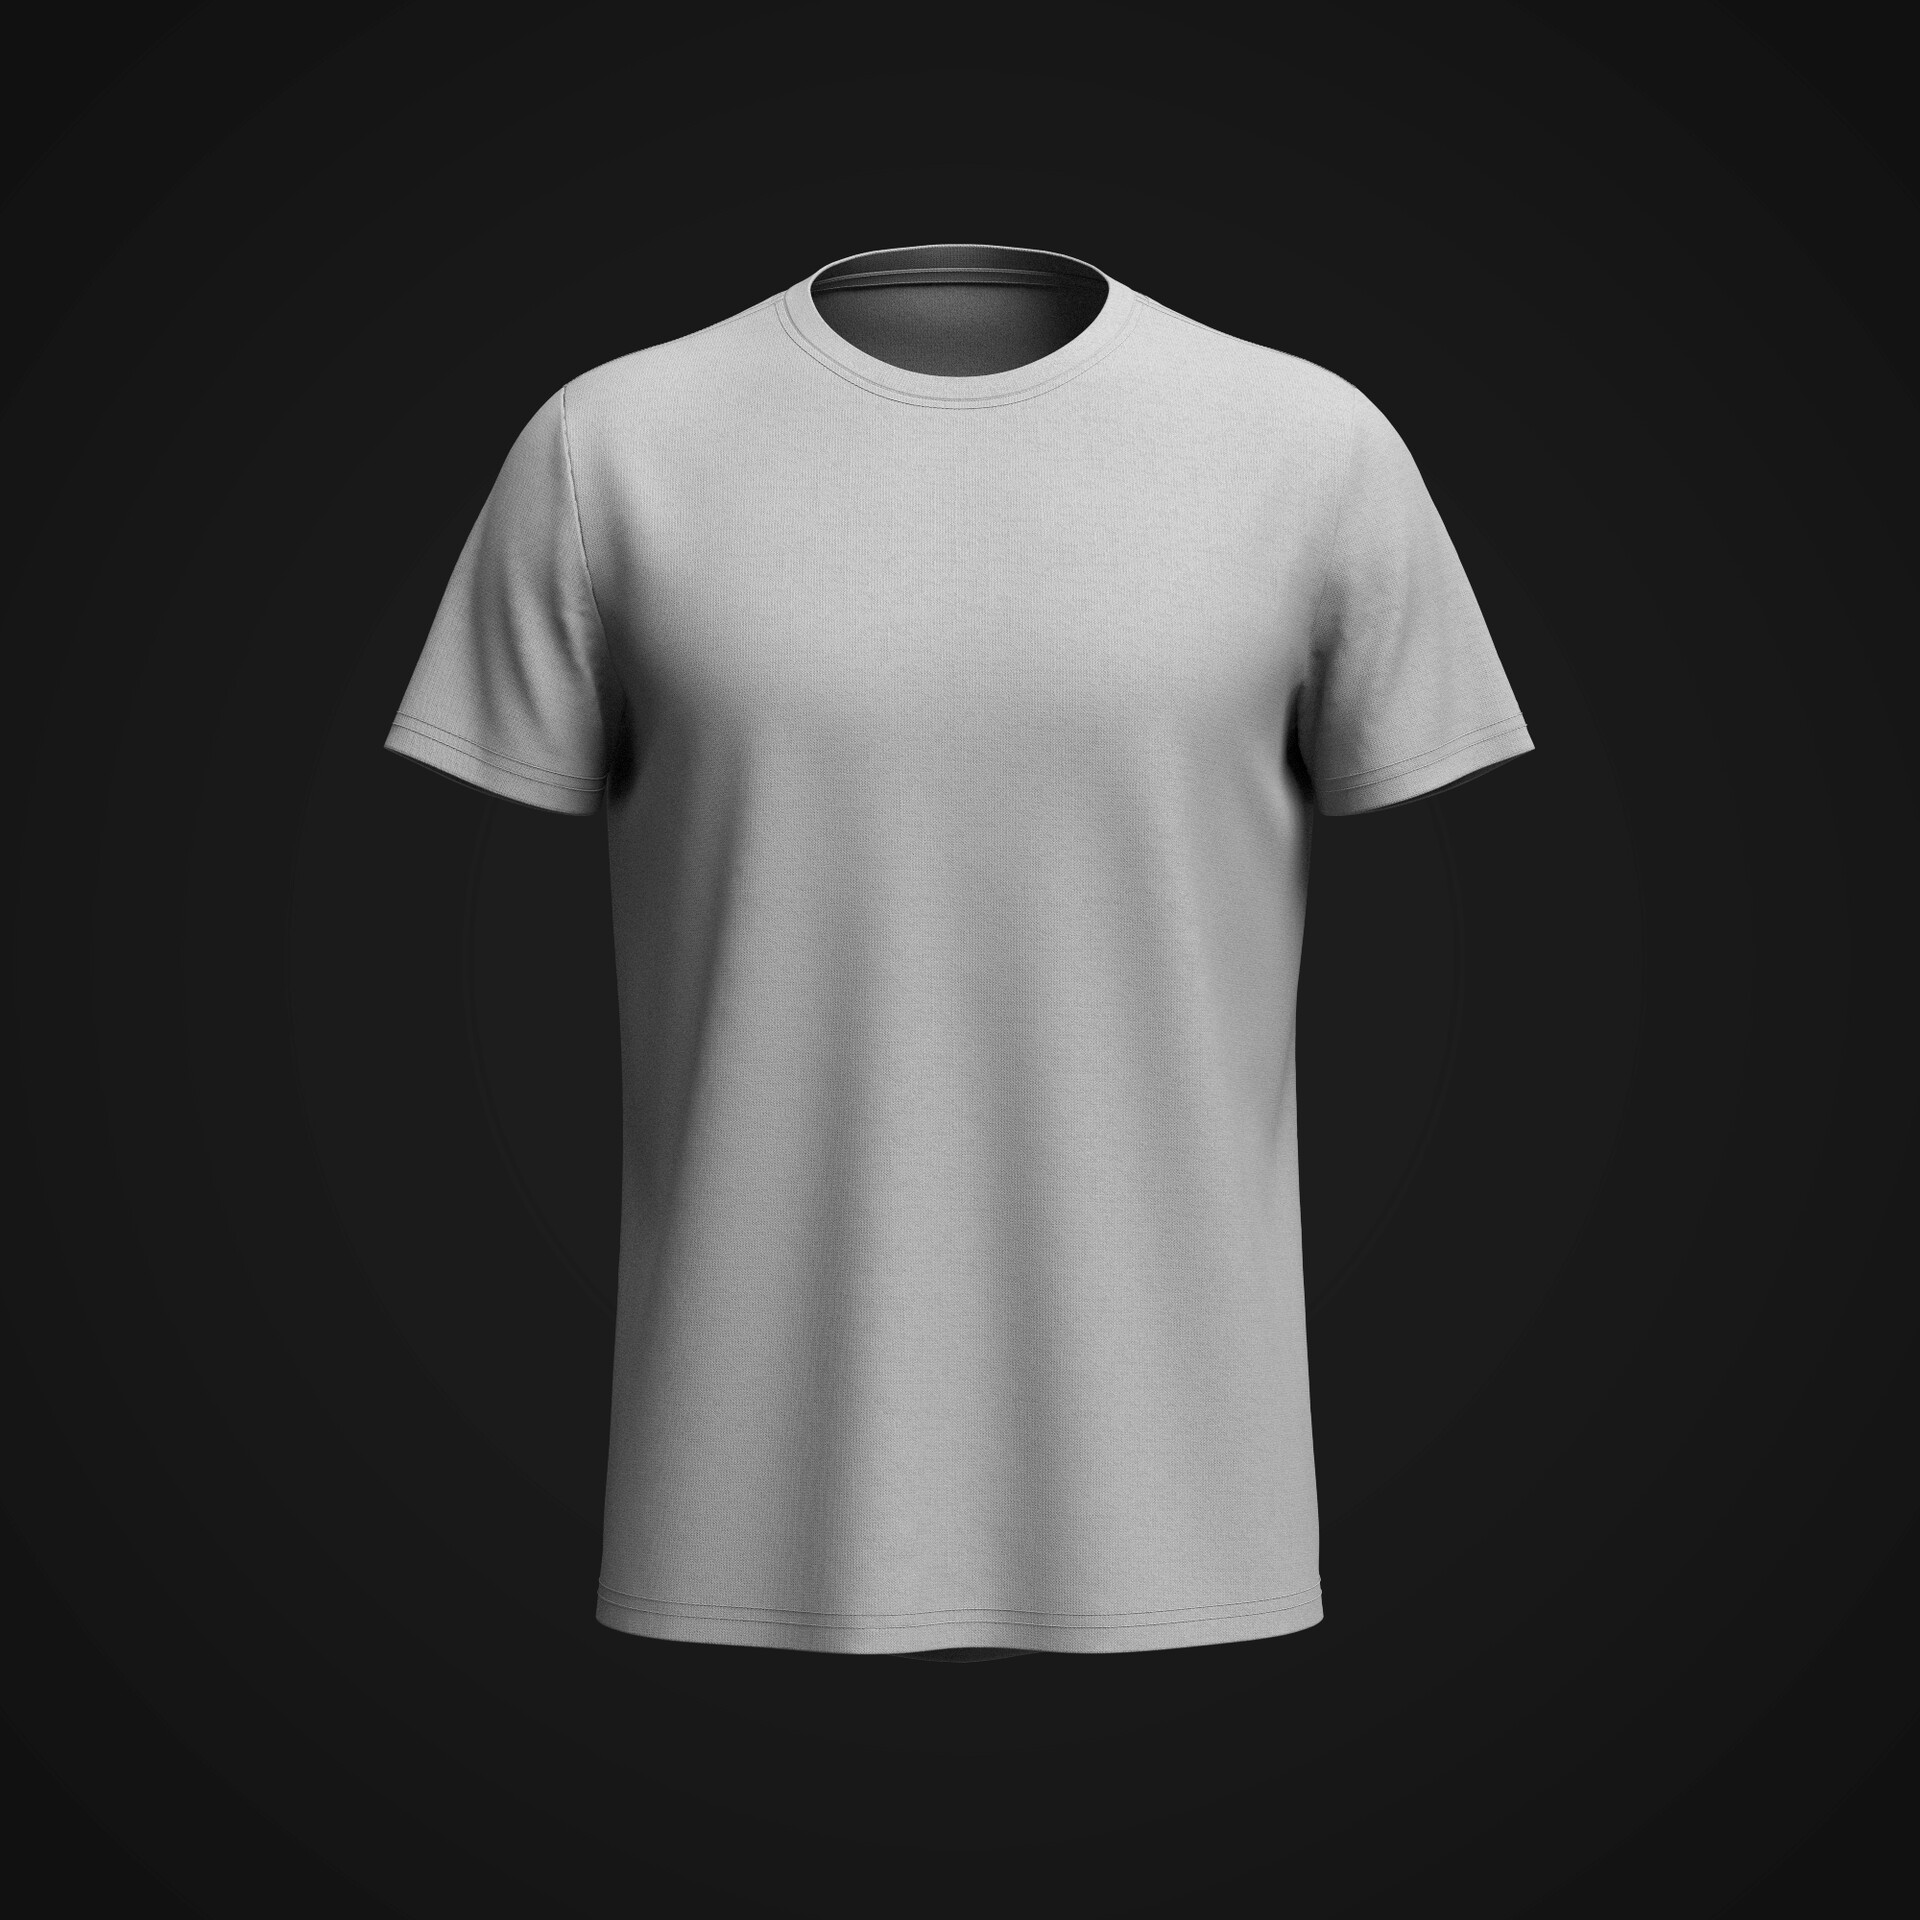 ArtStation - Men's T shirt 3d model